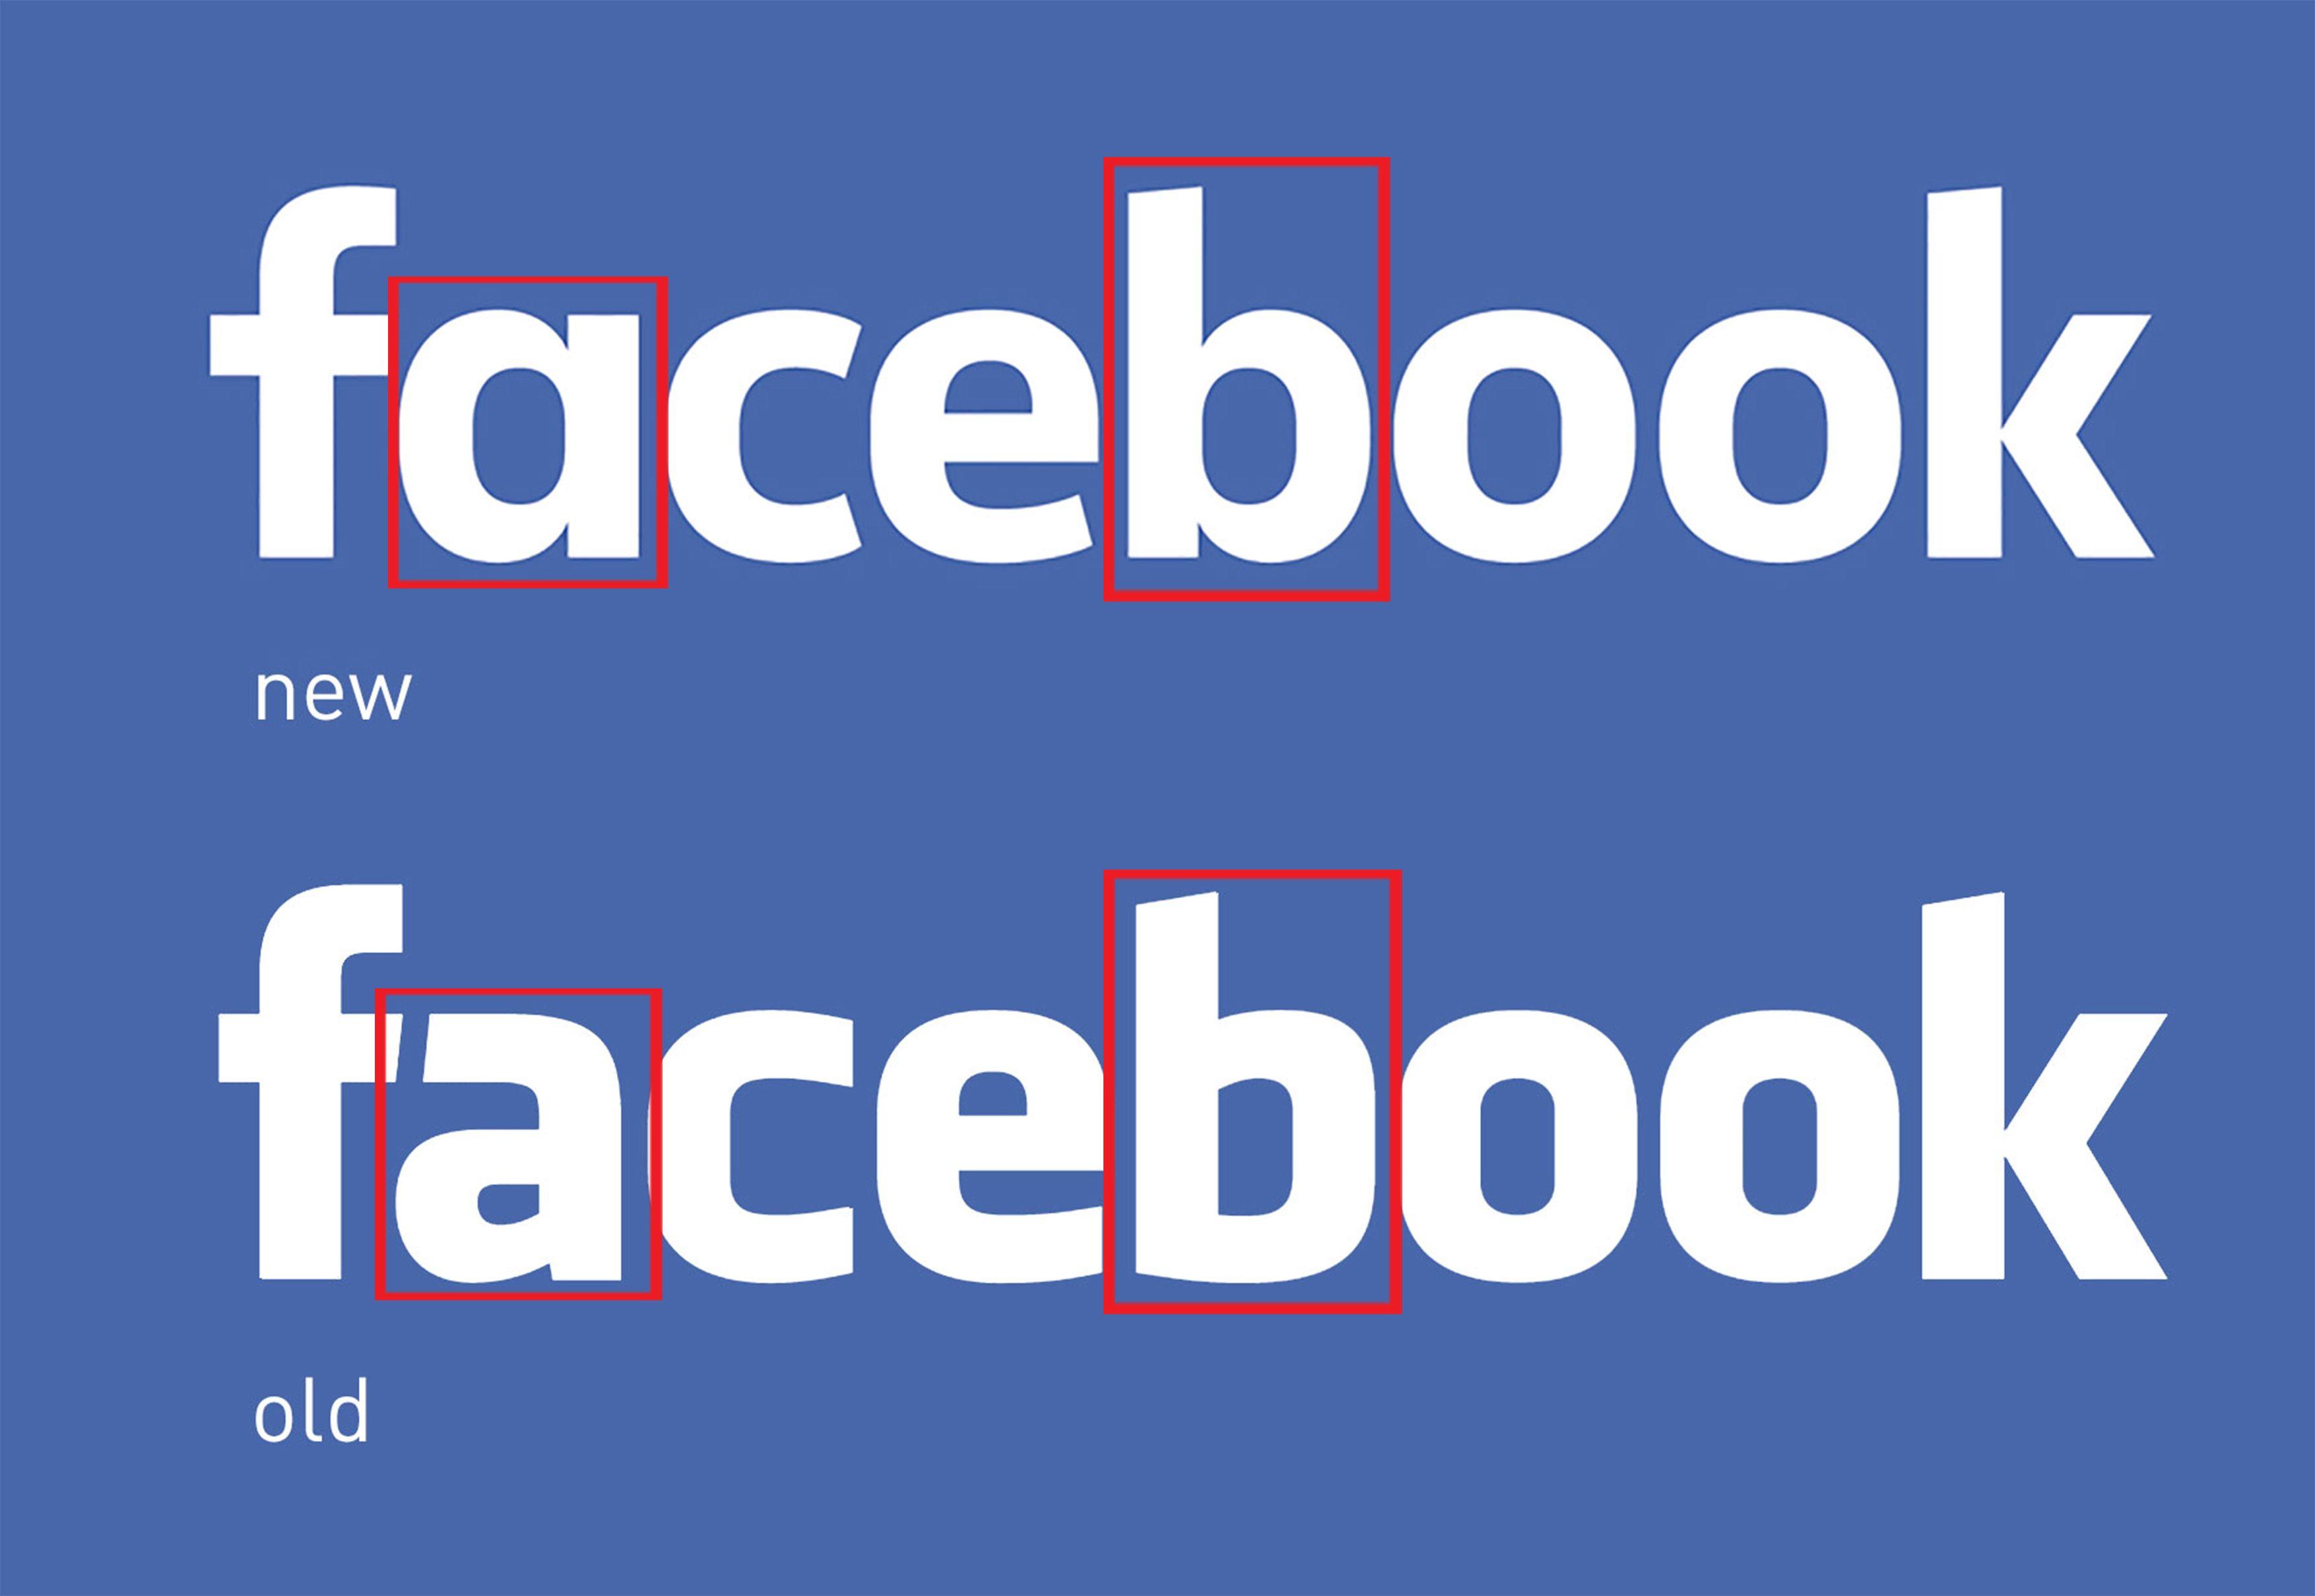 Old Facebook Logo - Facebook logo — New v.s Old – βerηαrdhsleong